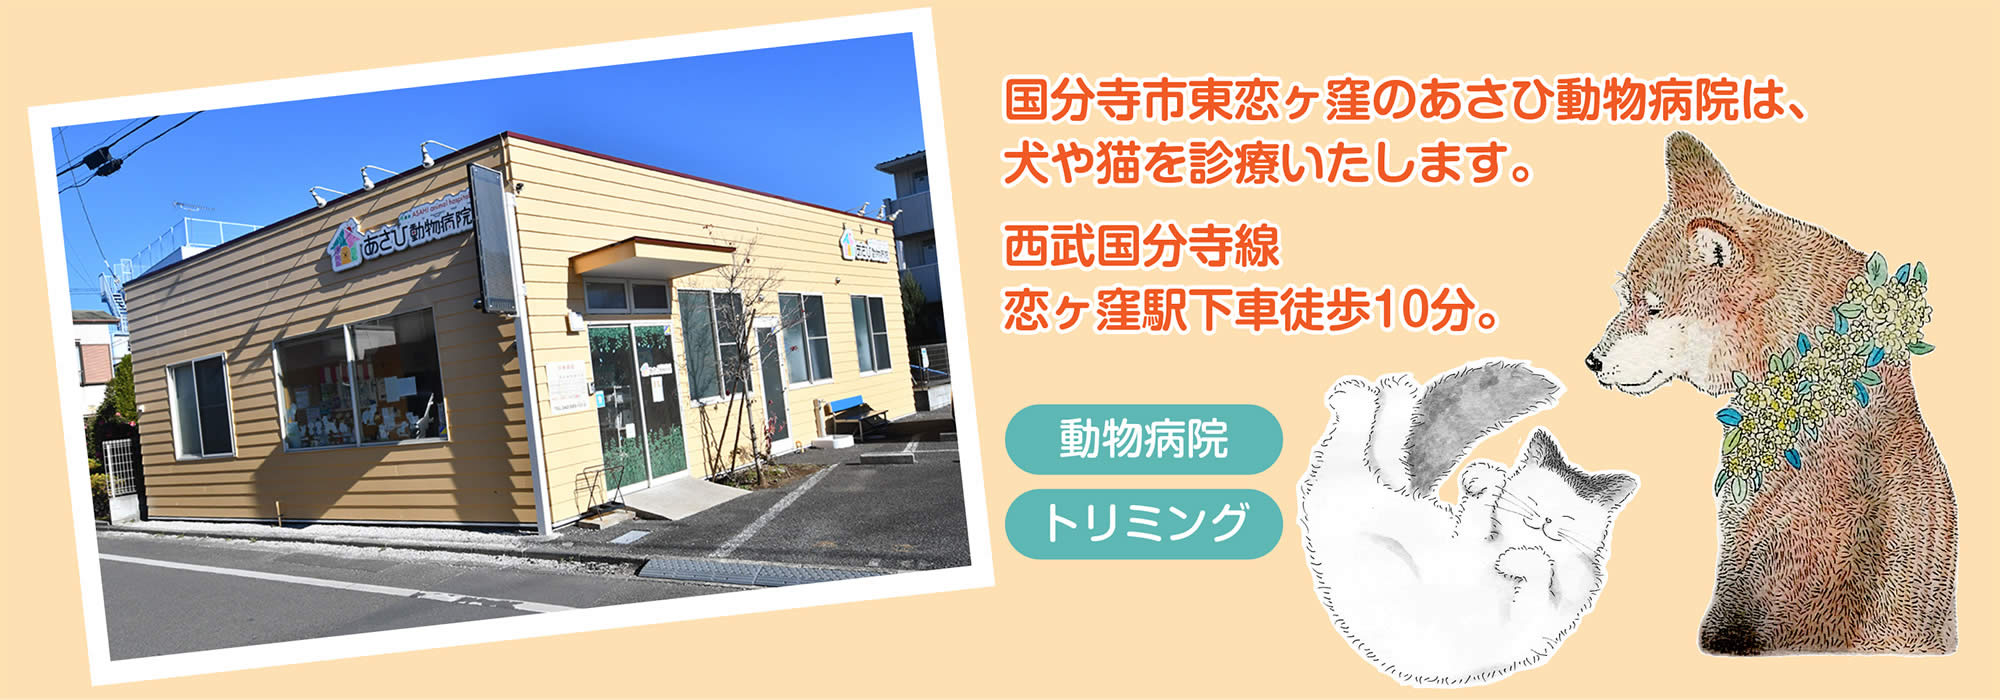 国分寺市東恋ヶ窪の「あさひ動物病院」は犬・猫を診療いたします。 西武国分寺線「恋ヶ窪駅」徒歩10分。